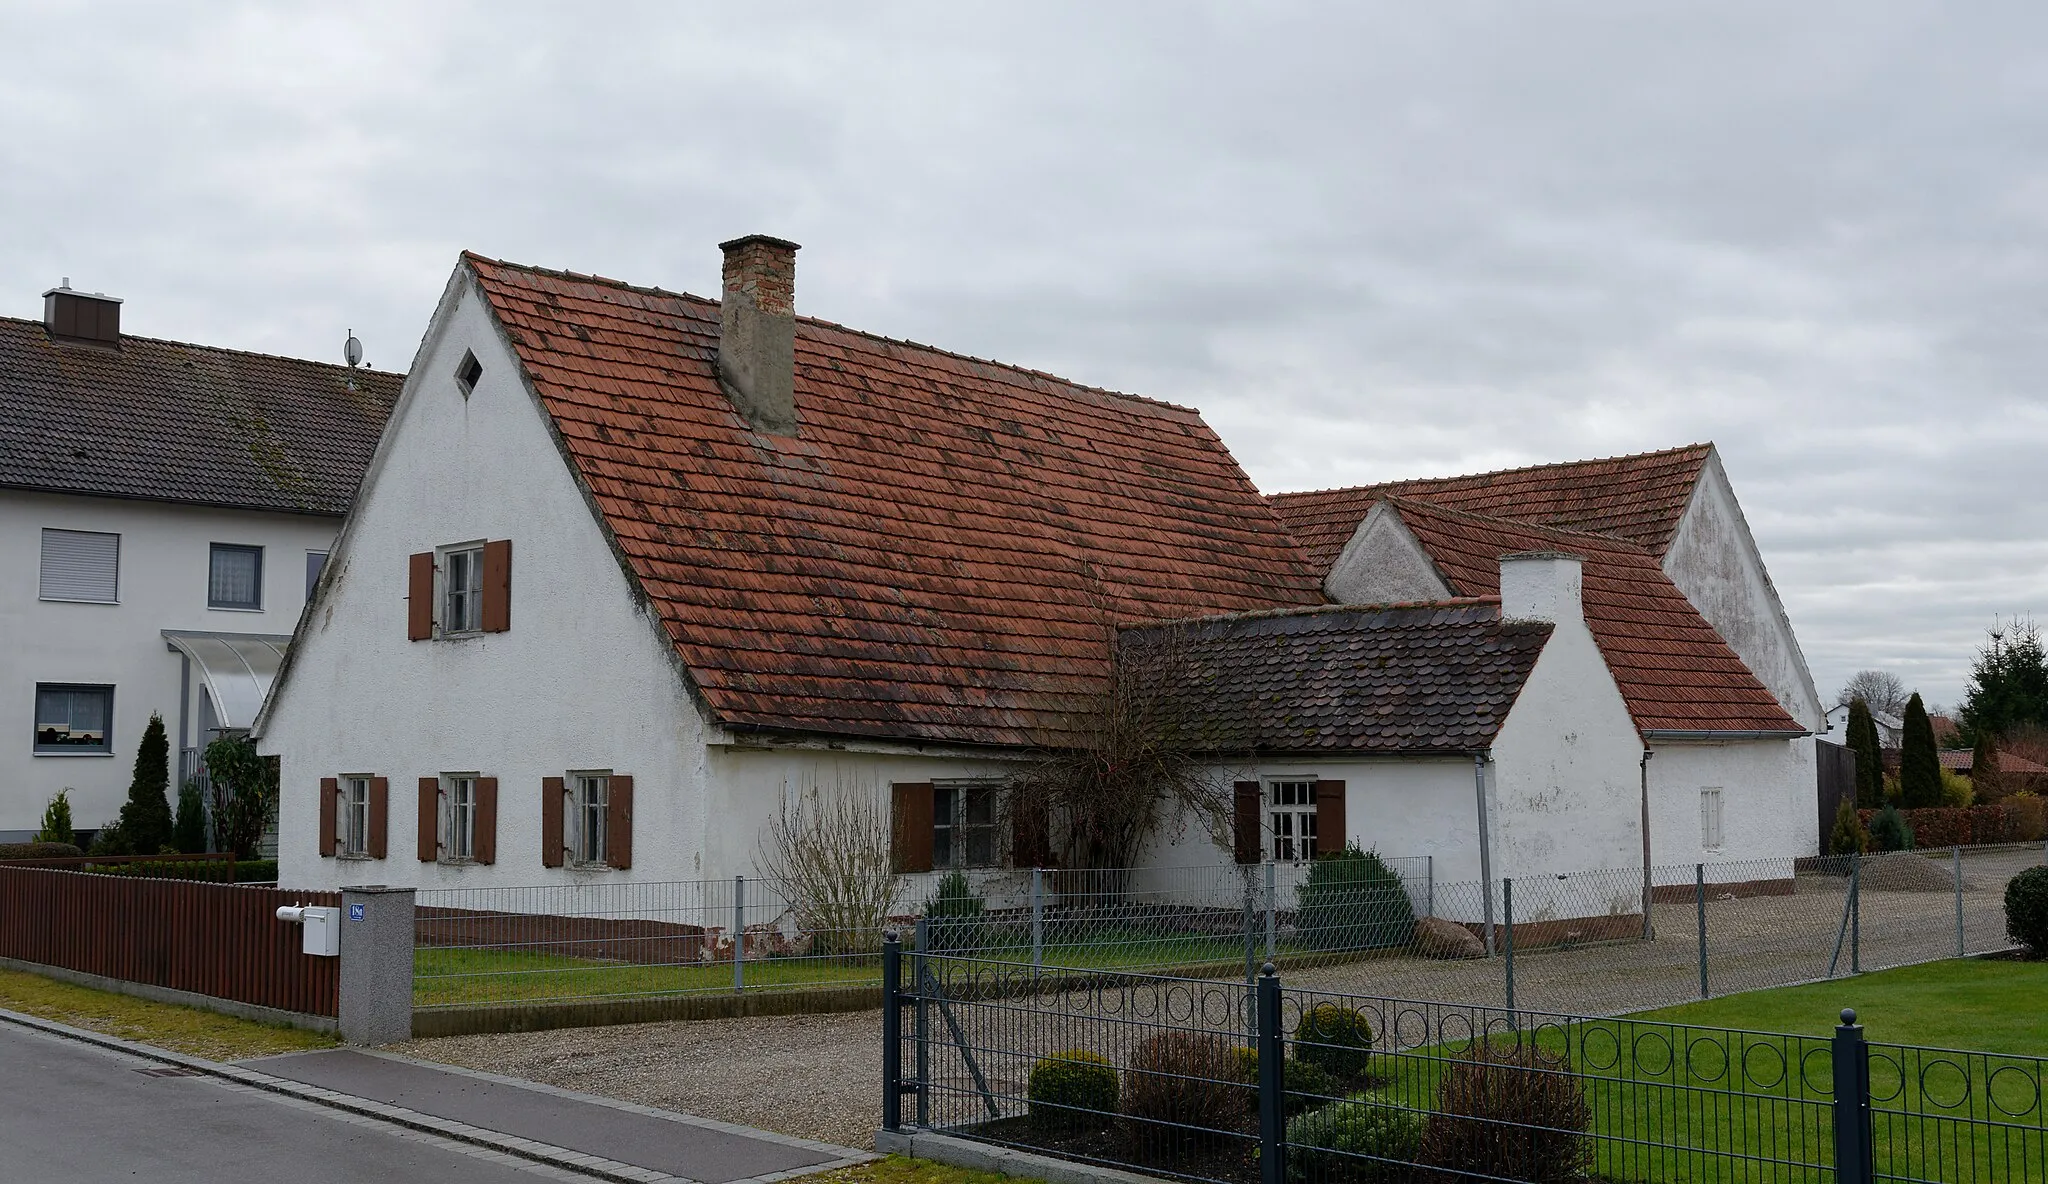 Photo showing: Wohnhaus, erdgeschossiger Giebelbau mit Greddach, Ende 19. Jahrhundert; Stall und Stadel, querstehender Satteldachbau, gleichzeitig.